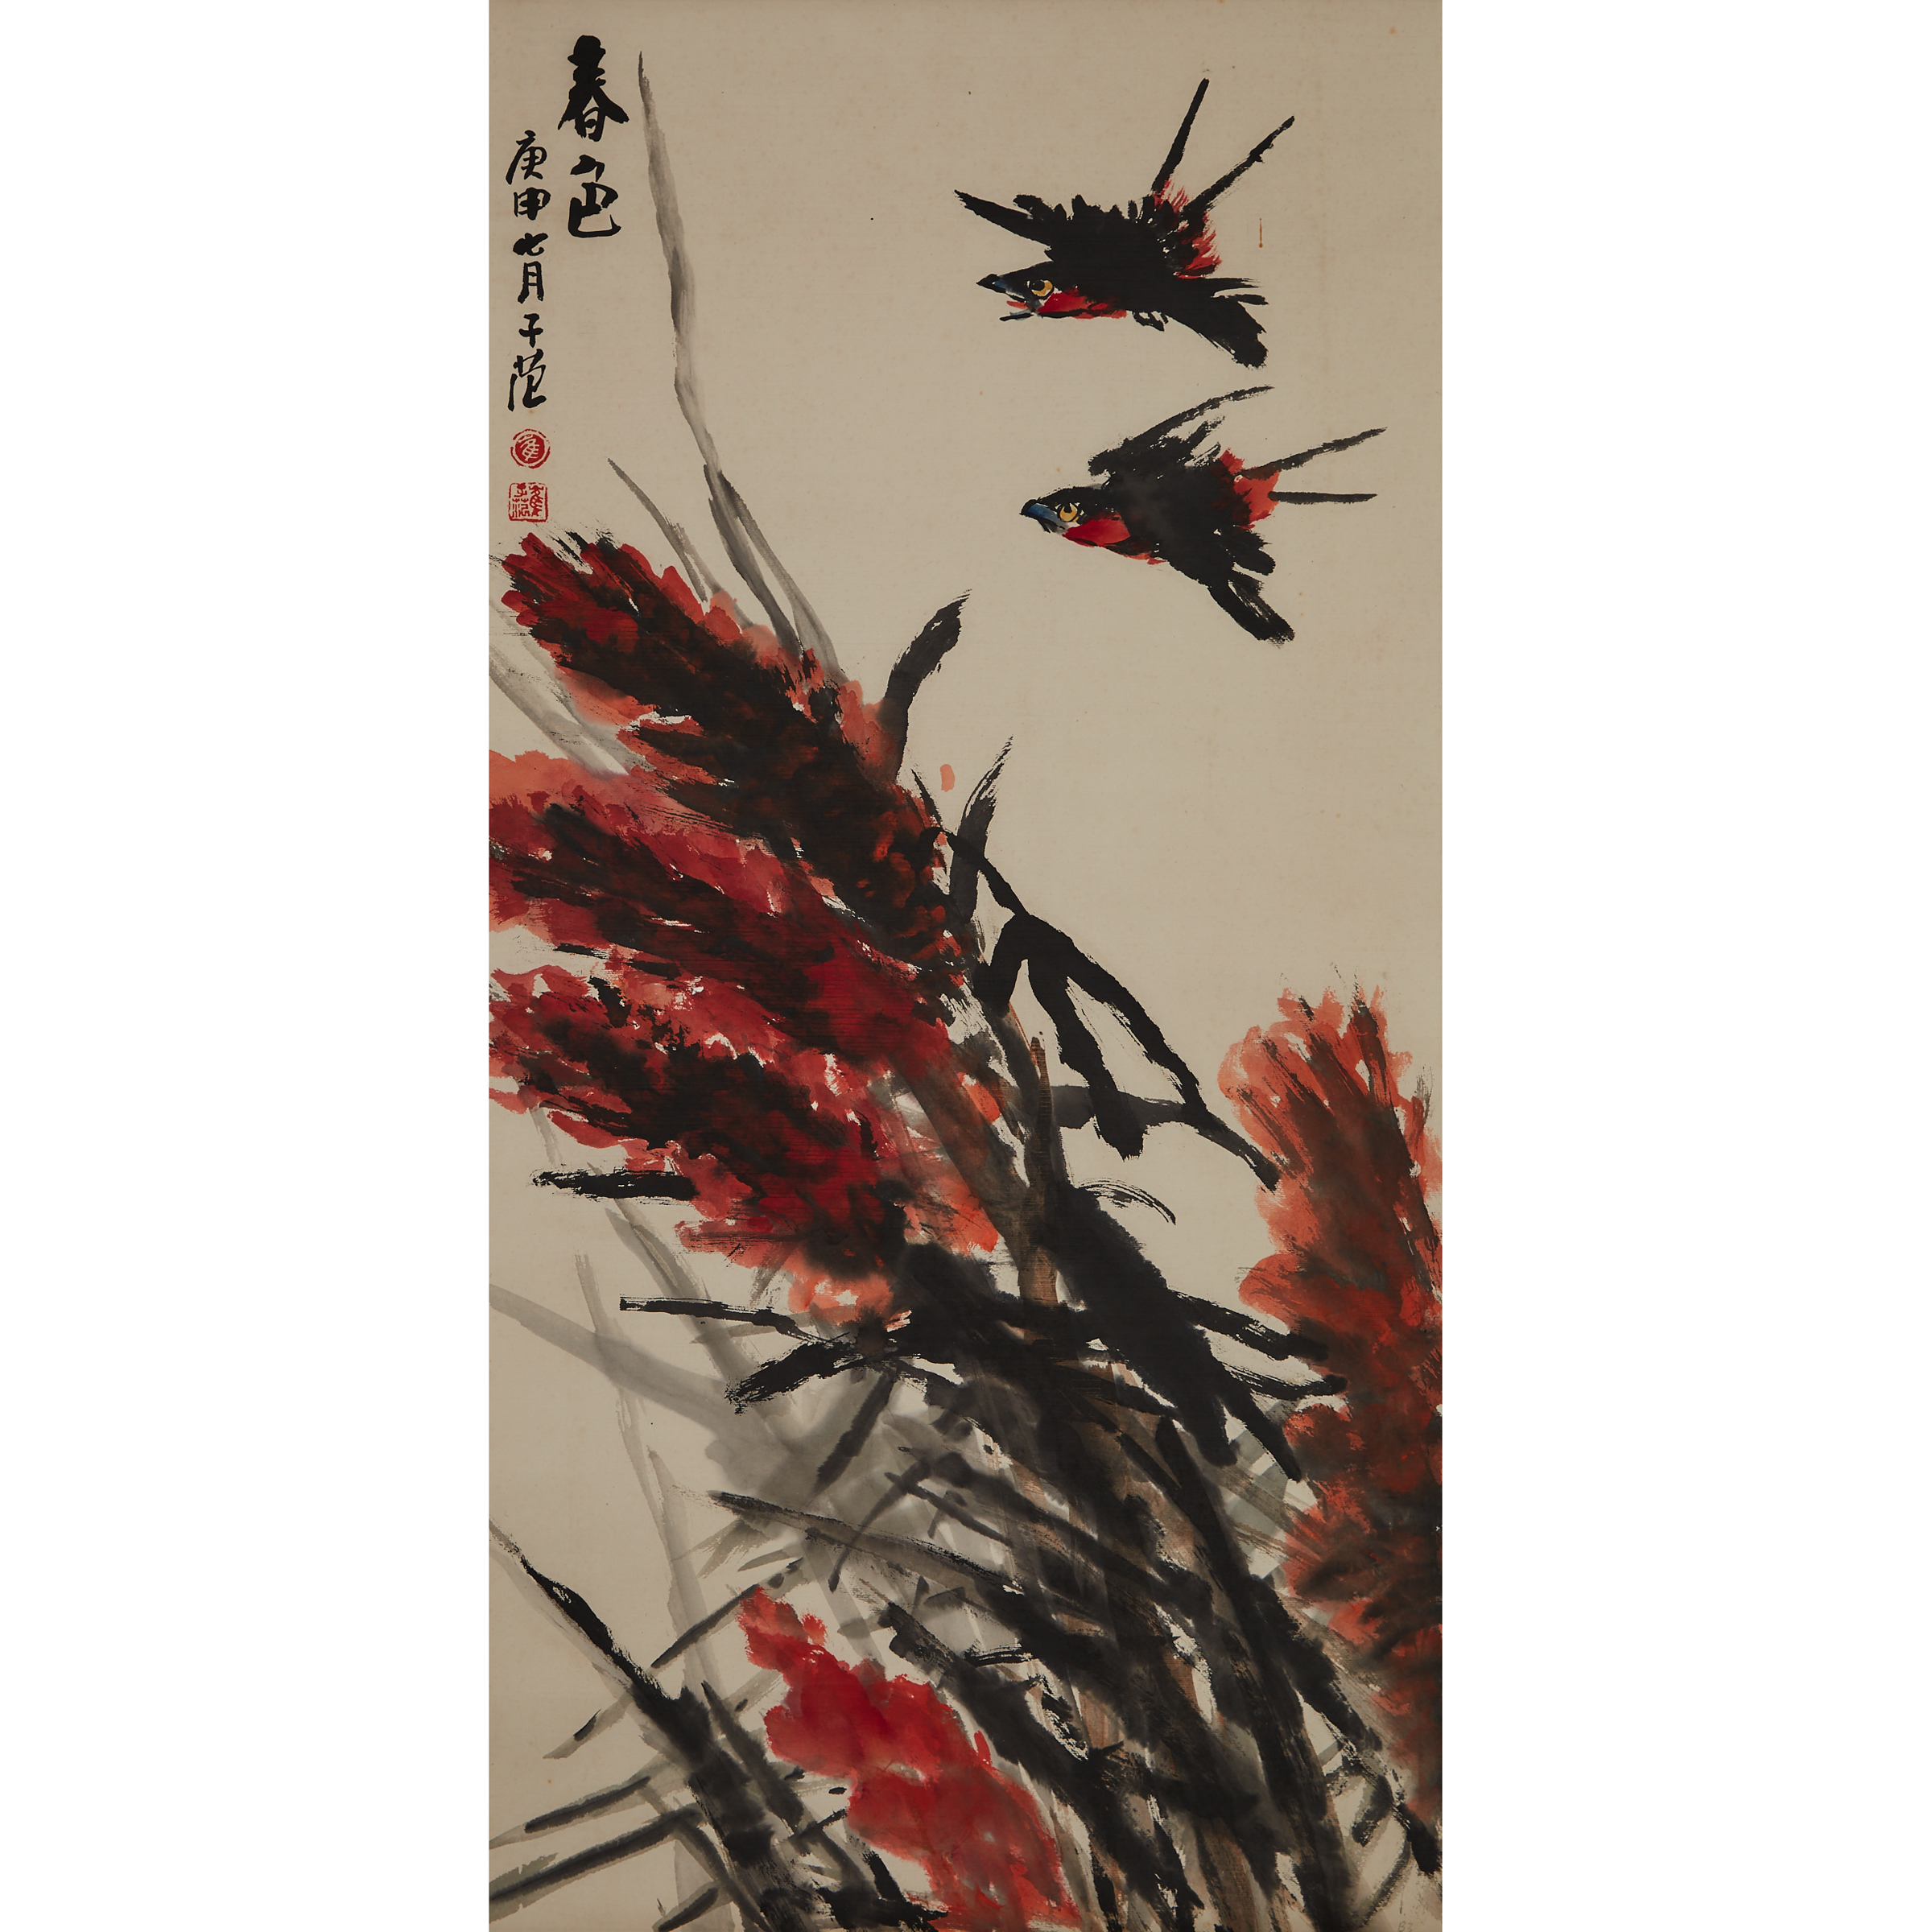 Cui Zifan (1915-2011), Swallows